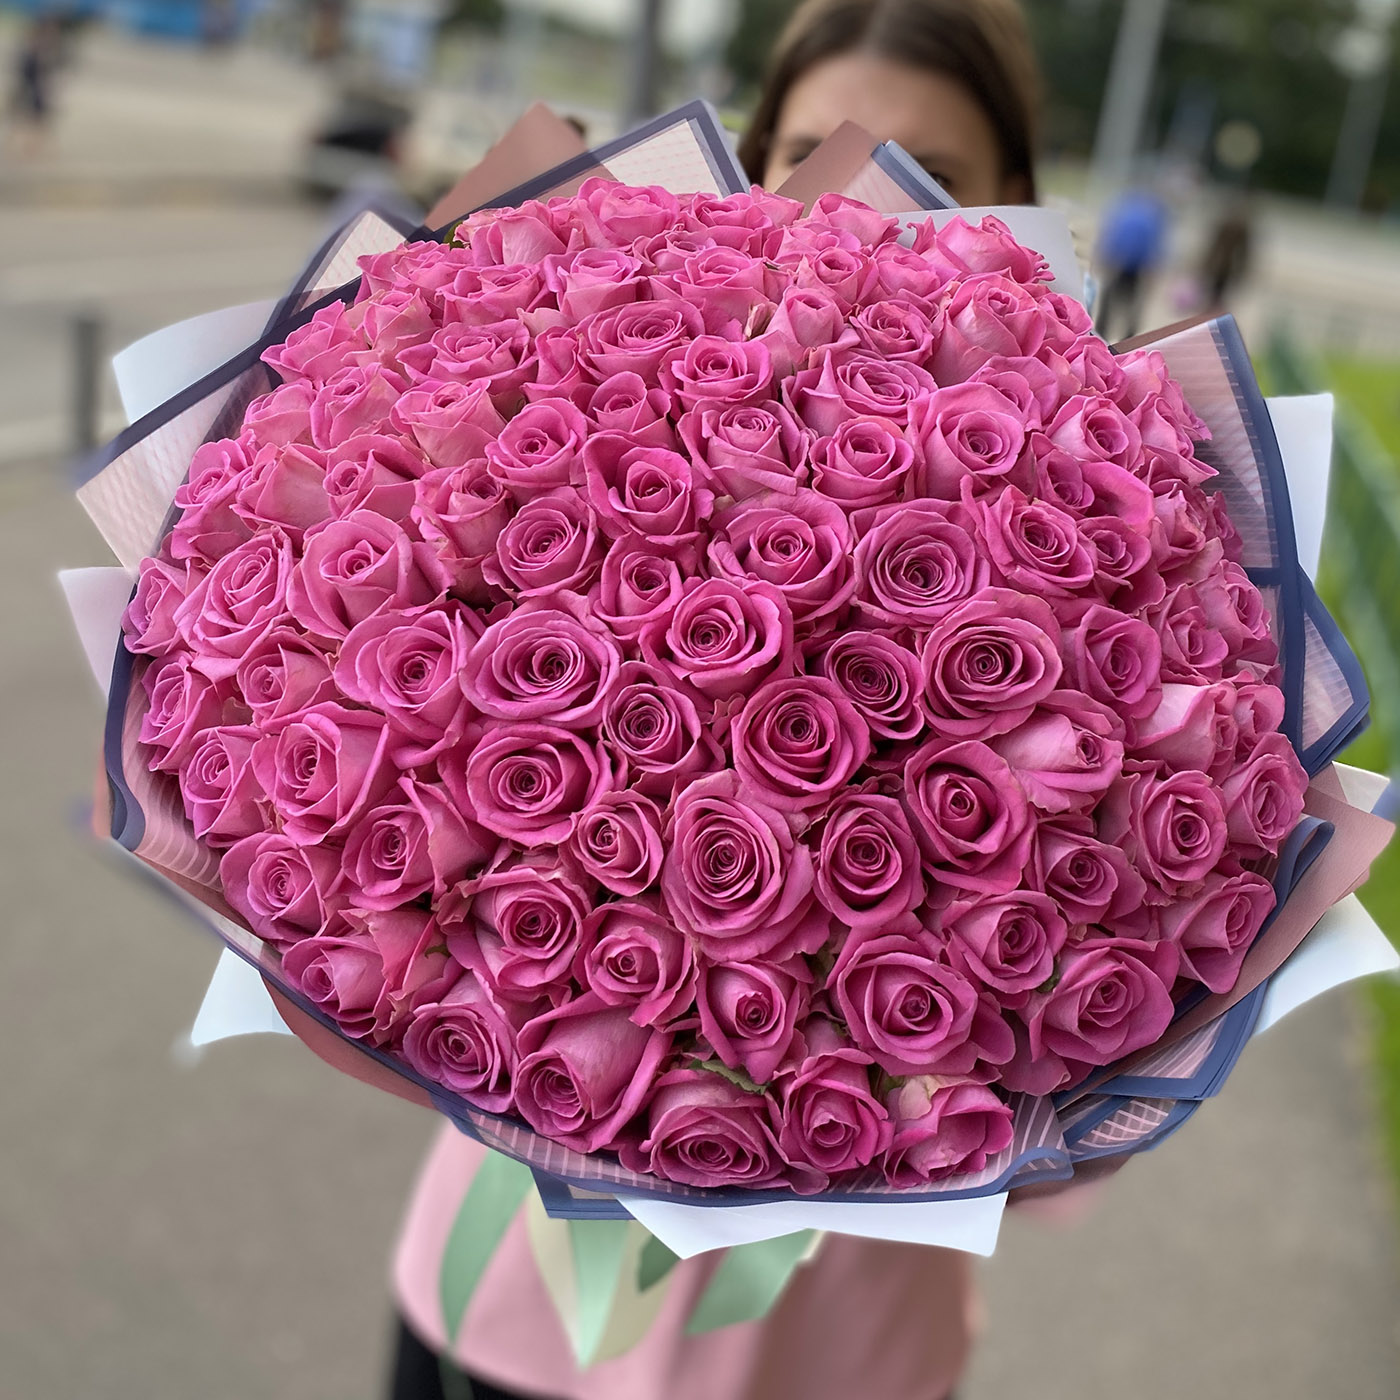 Купить 101 розу в москве цена купить в самаре мыльные цветы